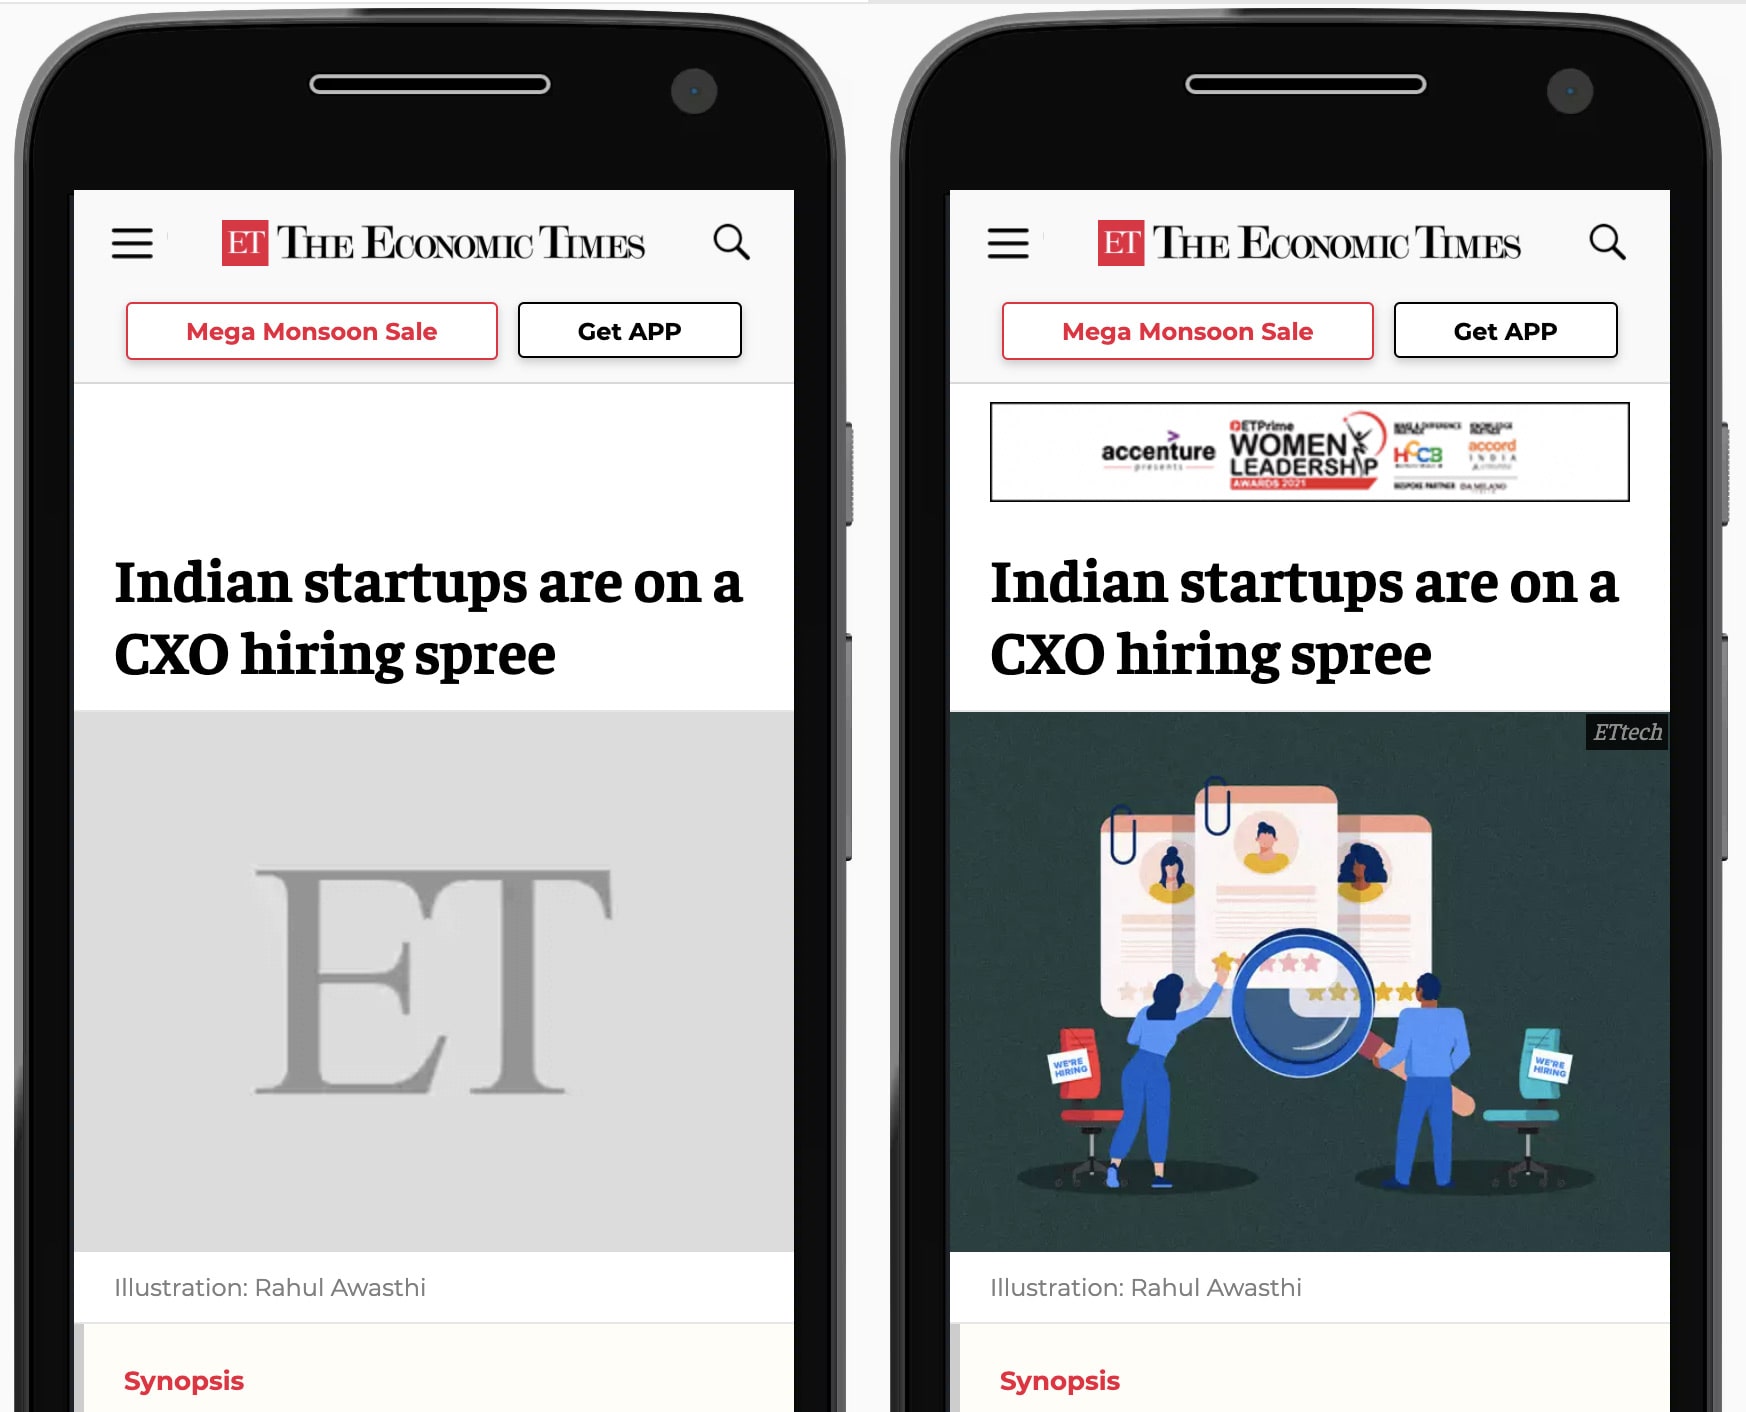 Параллельное сравнение веб-сайта The Economic Times, показанного на мобильном телефоне. Слева серый заполнитель зарезервирован для изображения главного героя статьи. Справа заполнитель заменяется загруженным изображением.